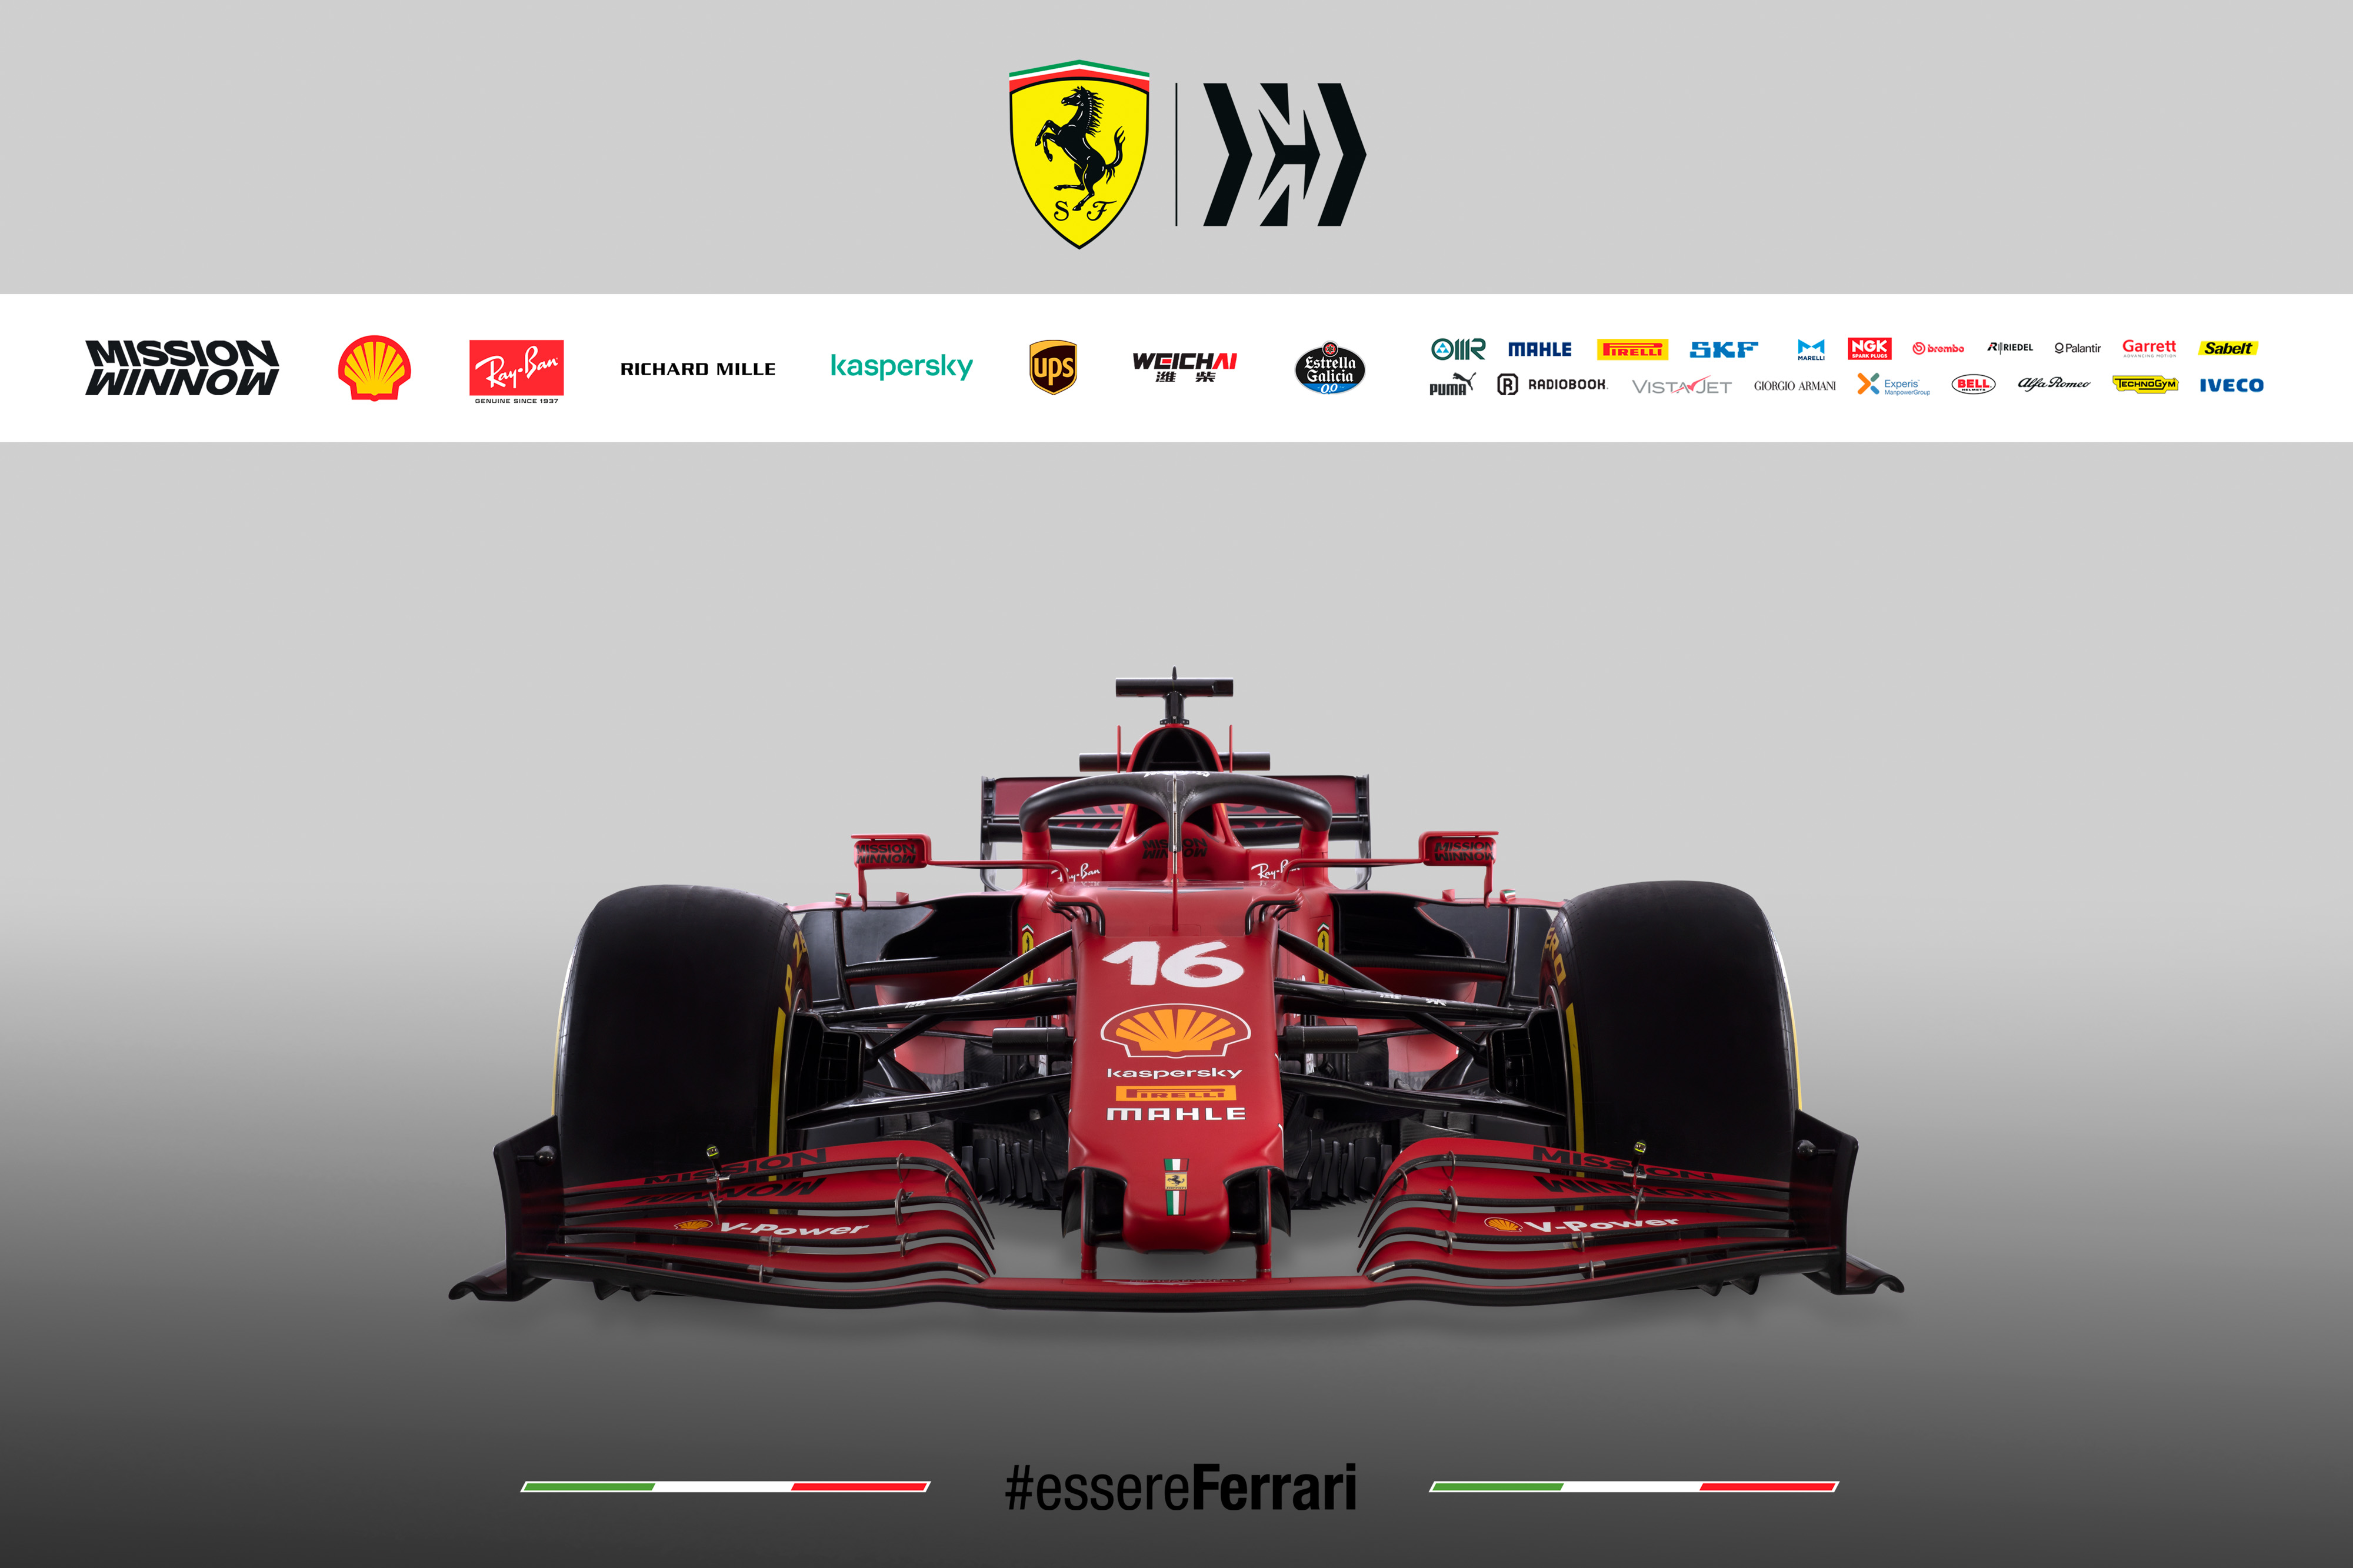 Ferrari's new car for 2021 season SF 21